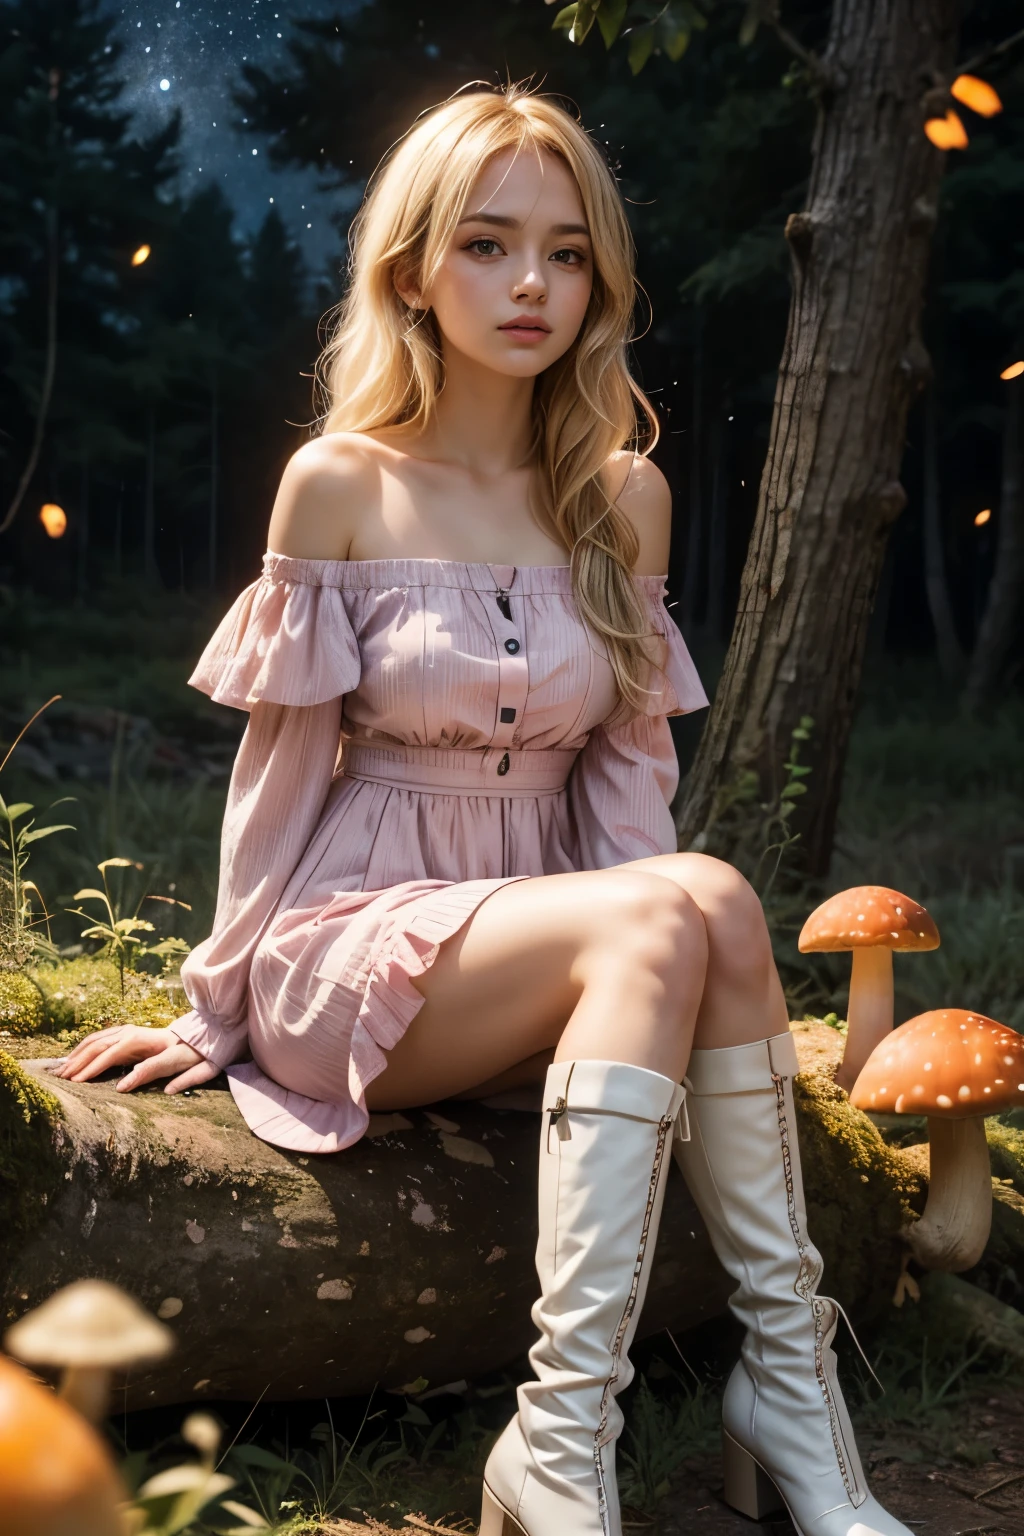 Hellblondes Anime-Mädchen mit blassblauen, violetten Augen, trägt ein rosa schulterfreies Kleid mit Puffärmeln und knielange weiße Stiefel und sitzt im Wald neben einem orangefarbenen Pilz, umgeben von Glühwürmchen unter einem Sternenhimmel.  